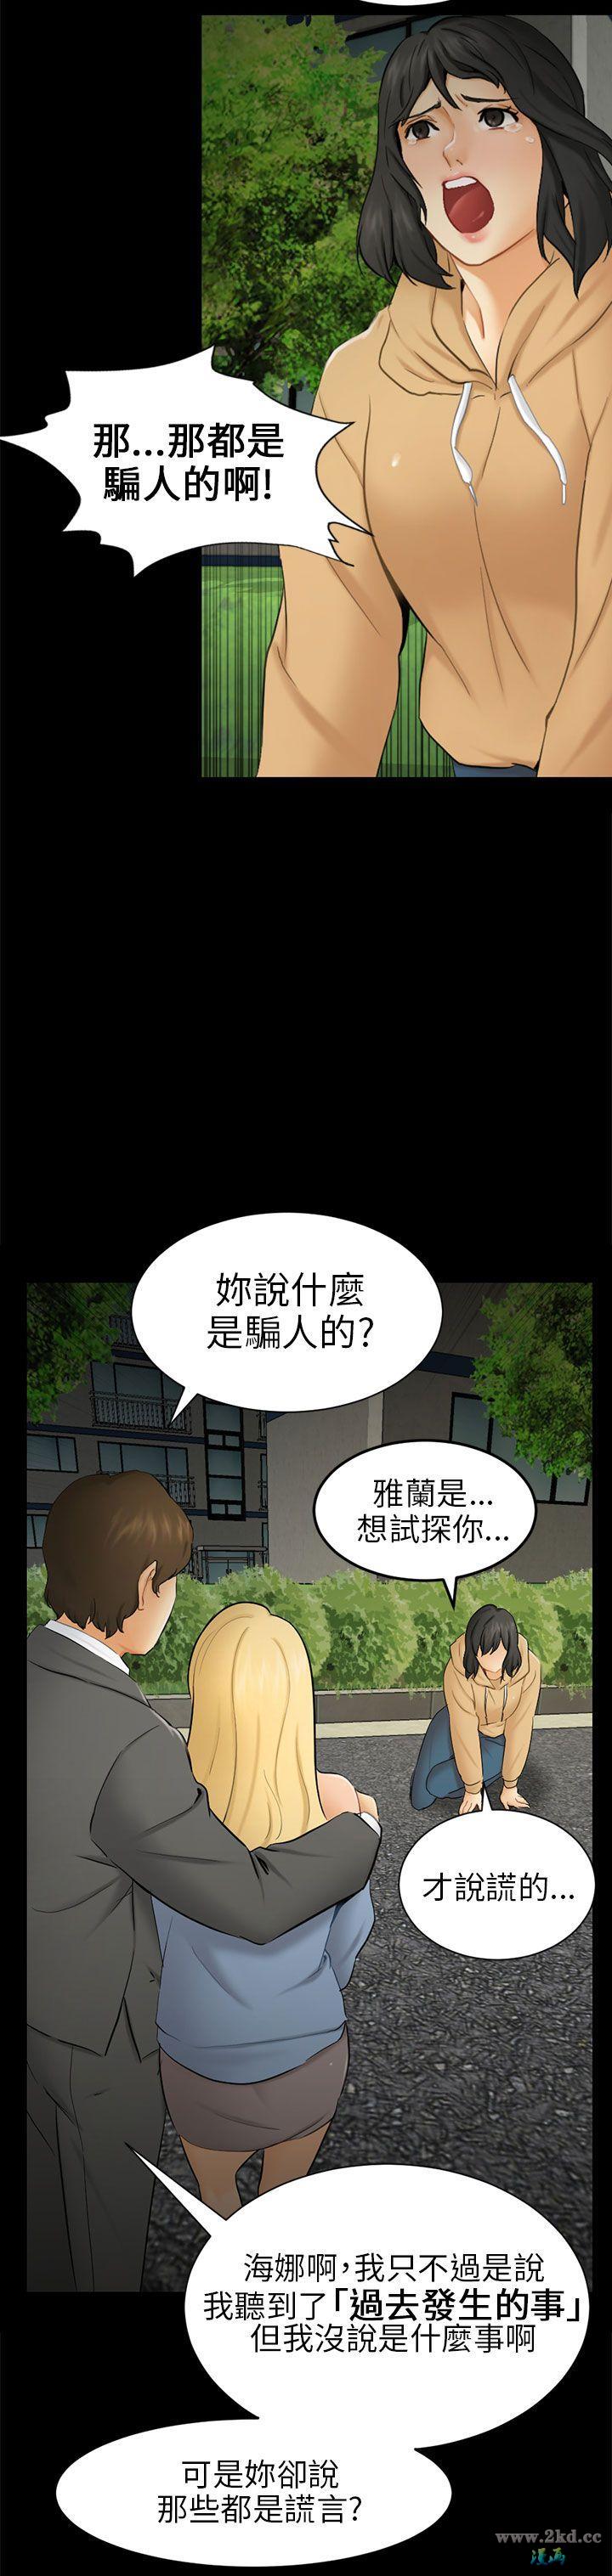 《骗局》漫画 第 09 话- 强迫